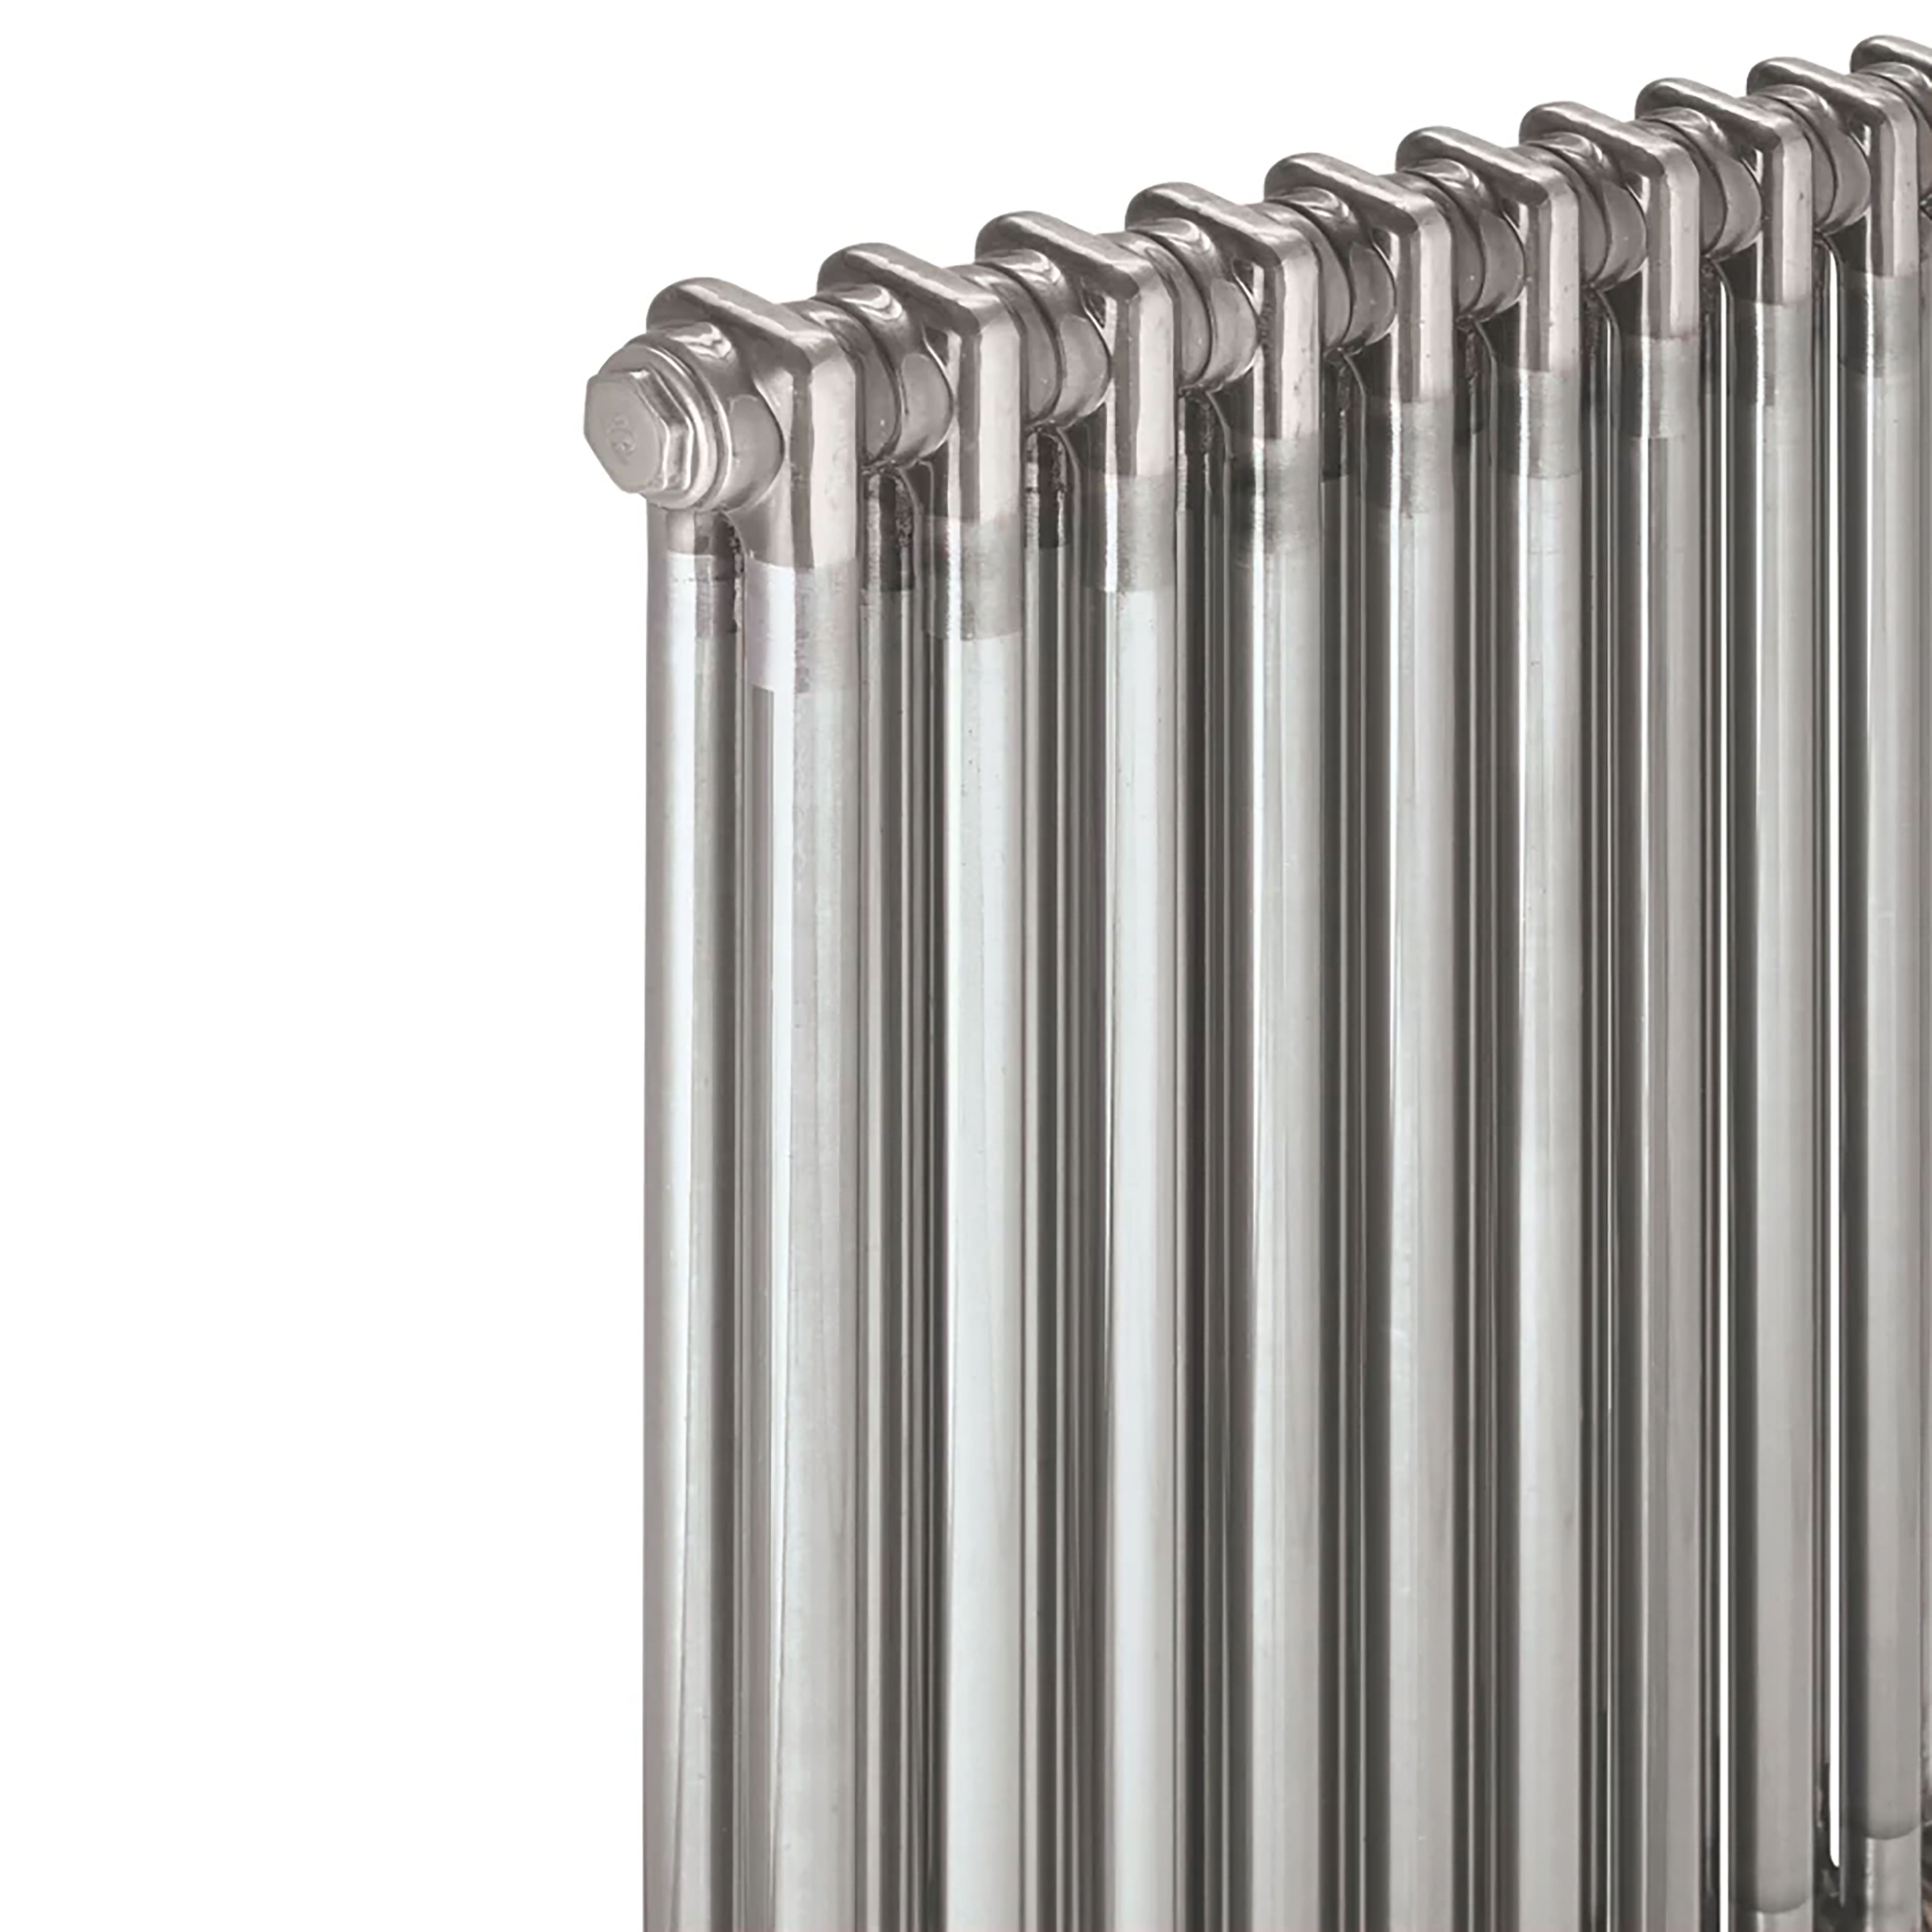 Acova Raw metal 2 Column Radiator, (W)628mm x (H)600mm